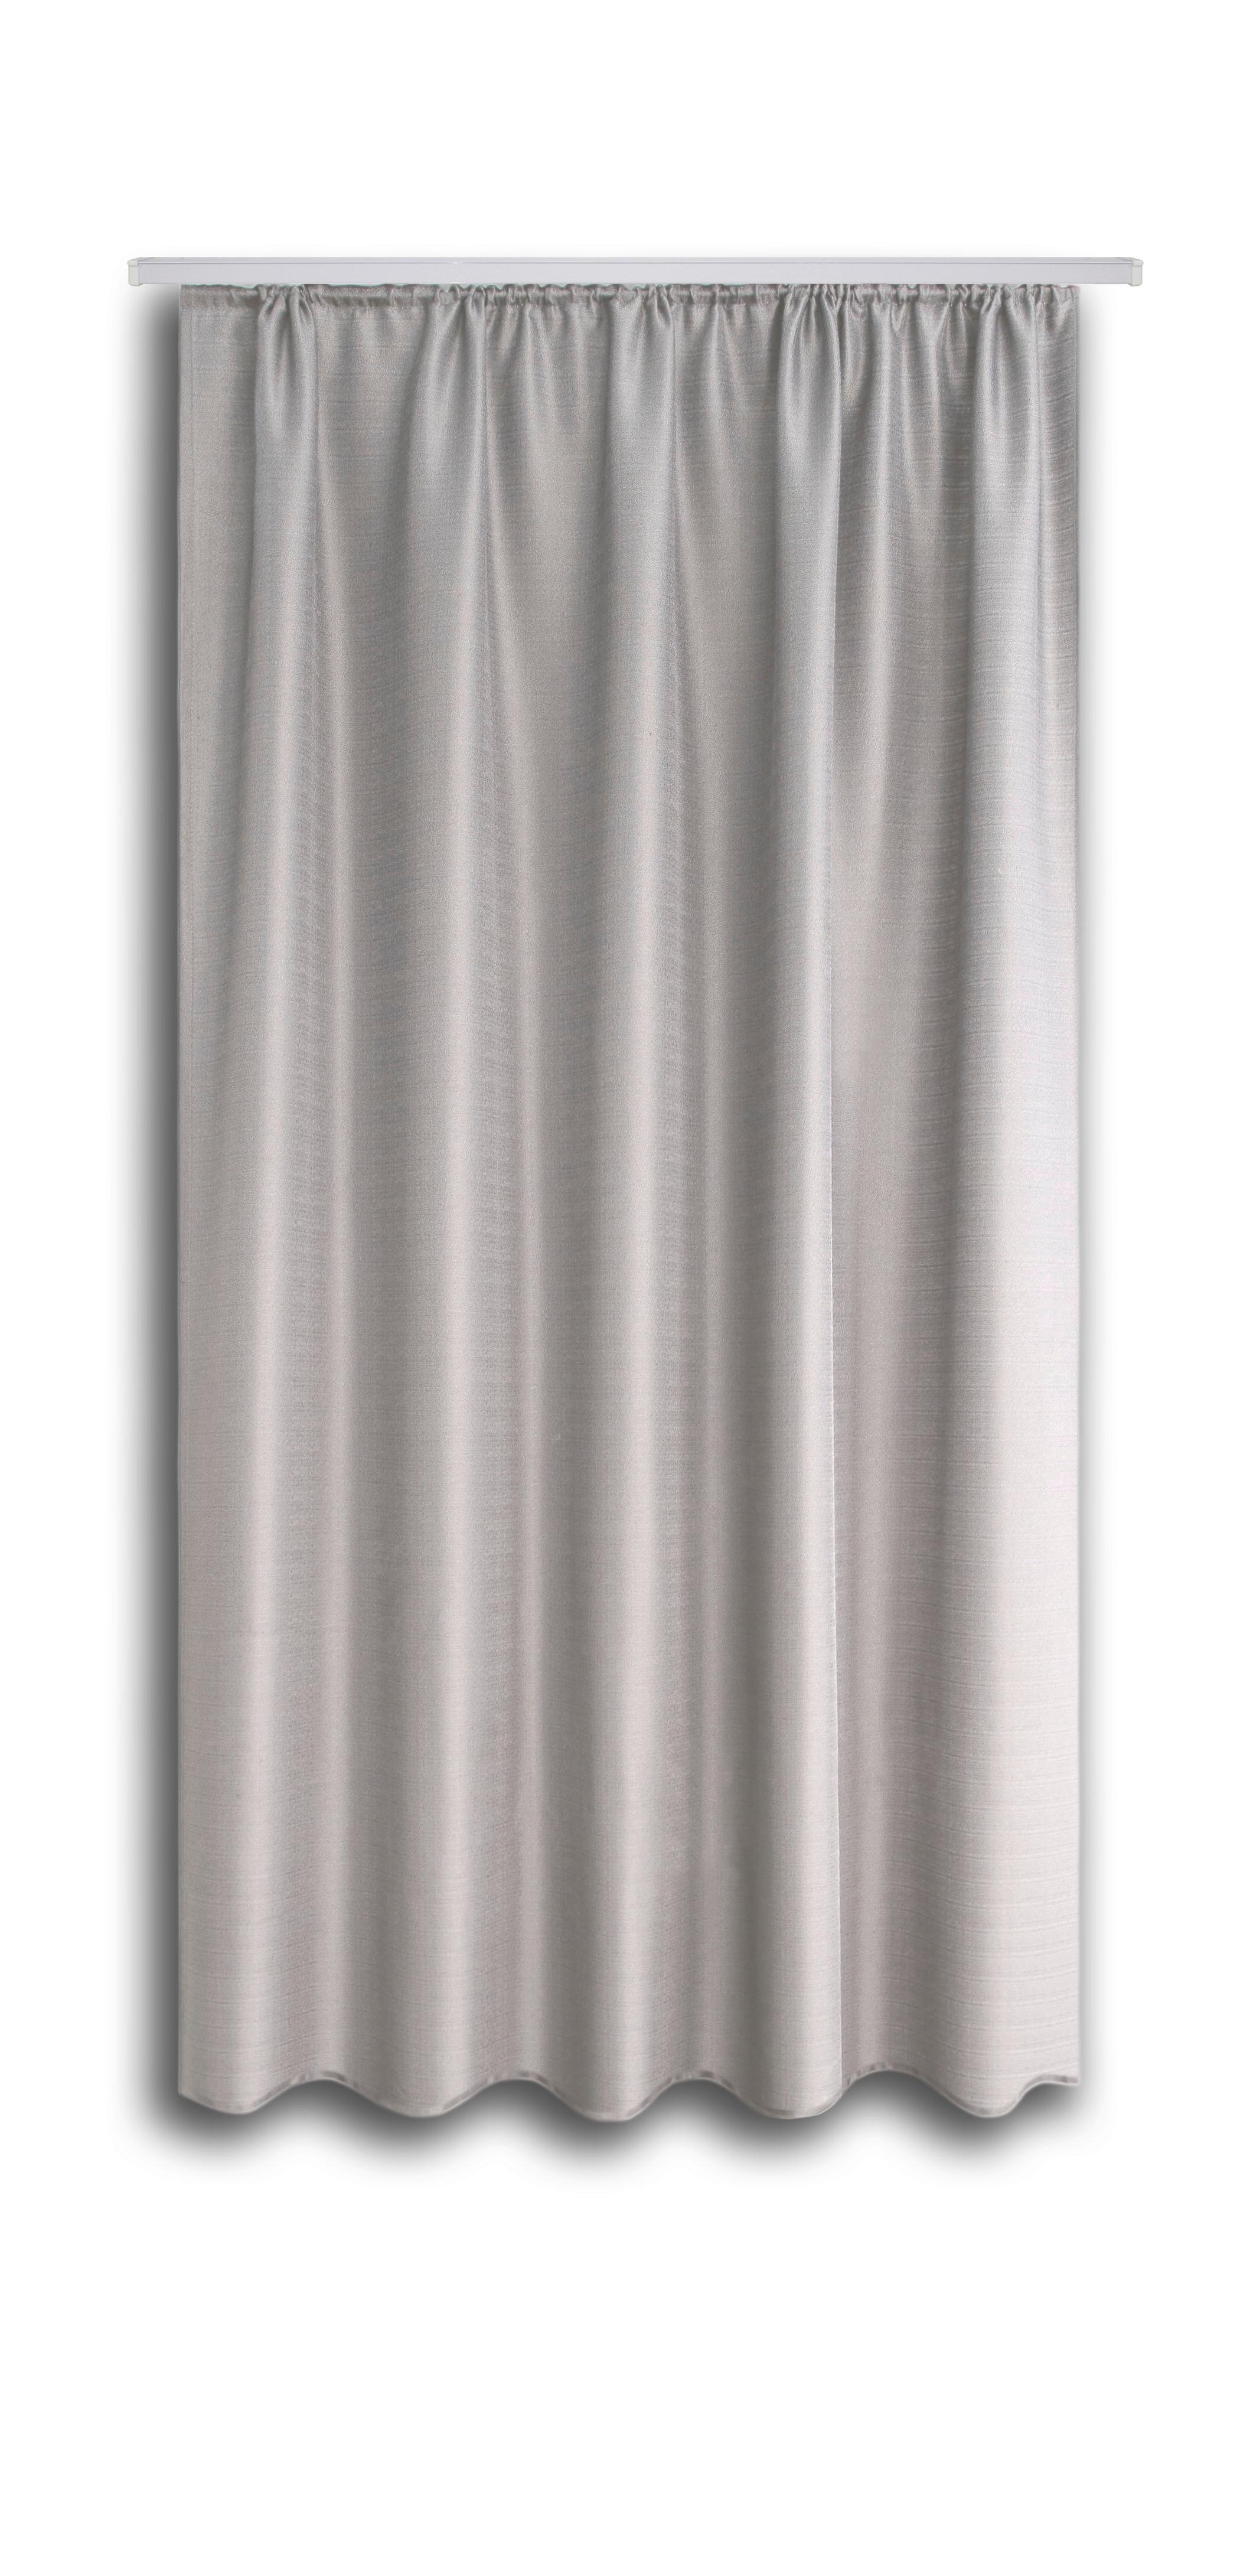 Készfüggöny Ben Ii - Ezüst, konvencionális, Textil (135/175cm) - Ondega